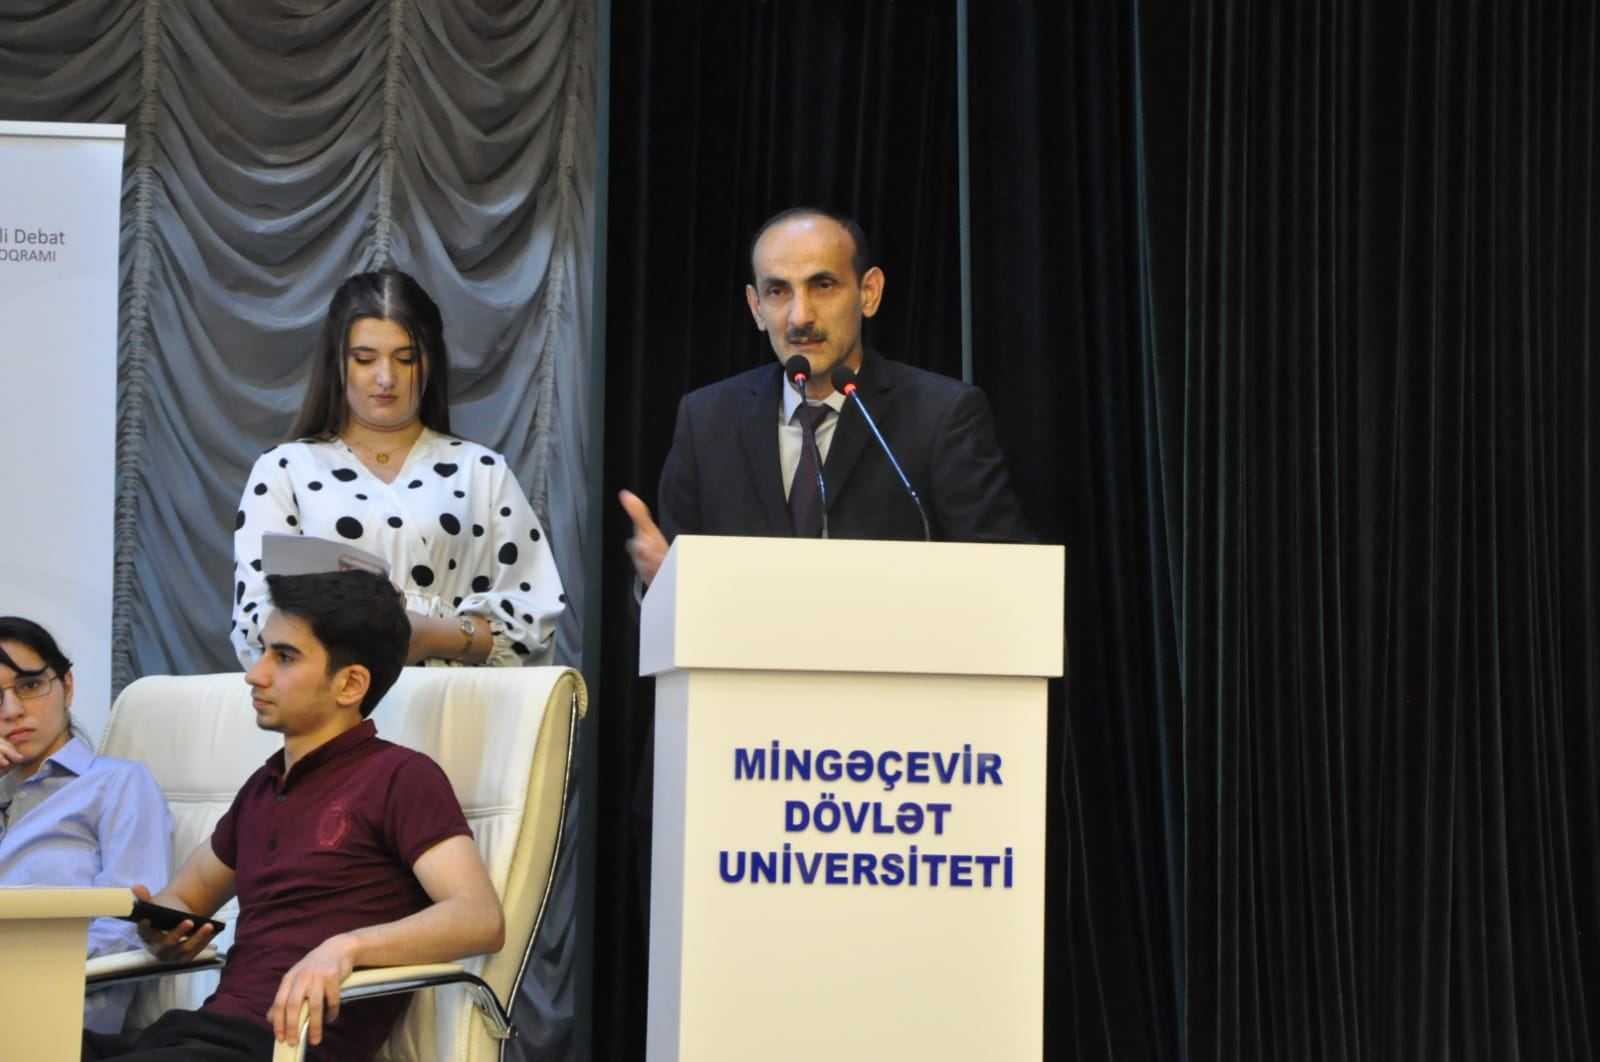 MDU komandaları “Mingəçevir Gənclər Debat Forumu”nun finalçıları olublar (FOTO)